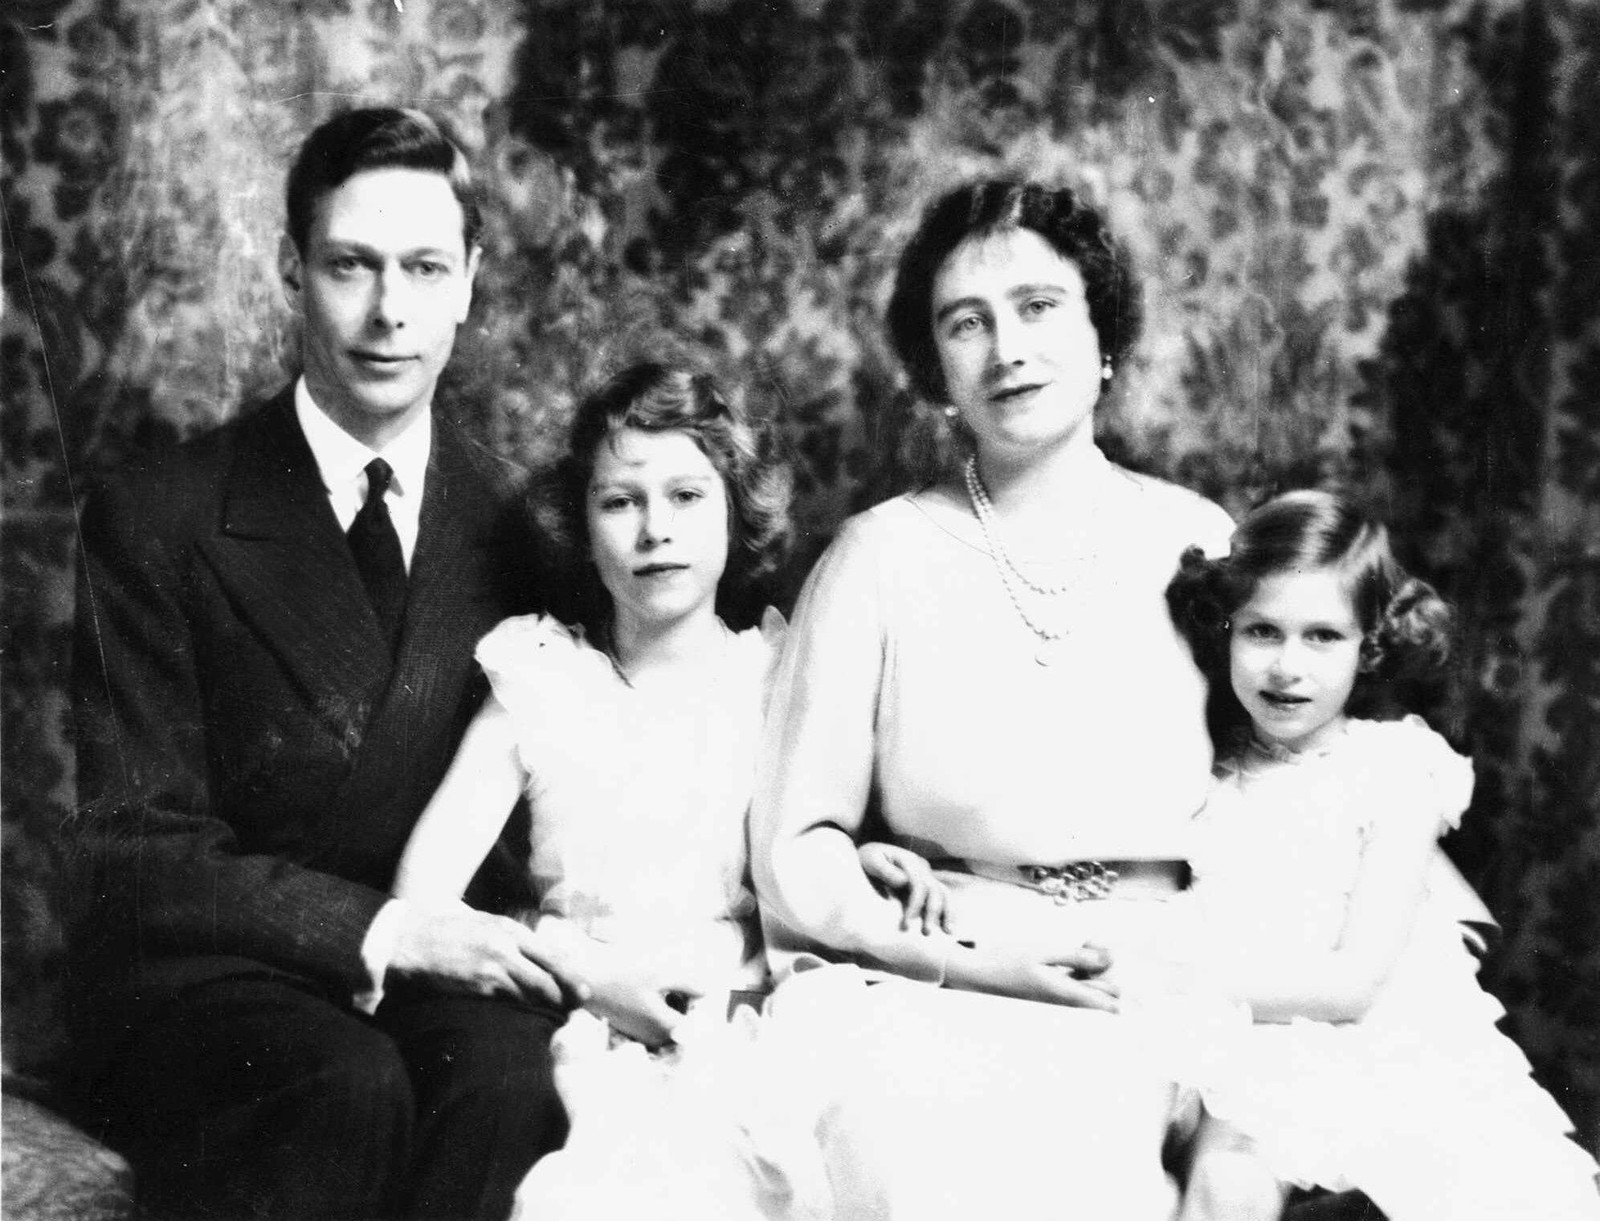 A princesa Elizabeth e a irmã mais nova, Margareth, posam com os pais, a rainha Elizabeth (a Rainha Mãe) e o rei George VI, para foto em 1937 — Foto: ATENÇÃO: DEFINIR CRÉDITO!